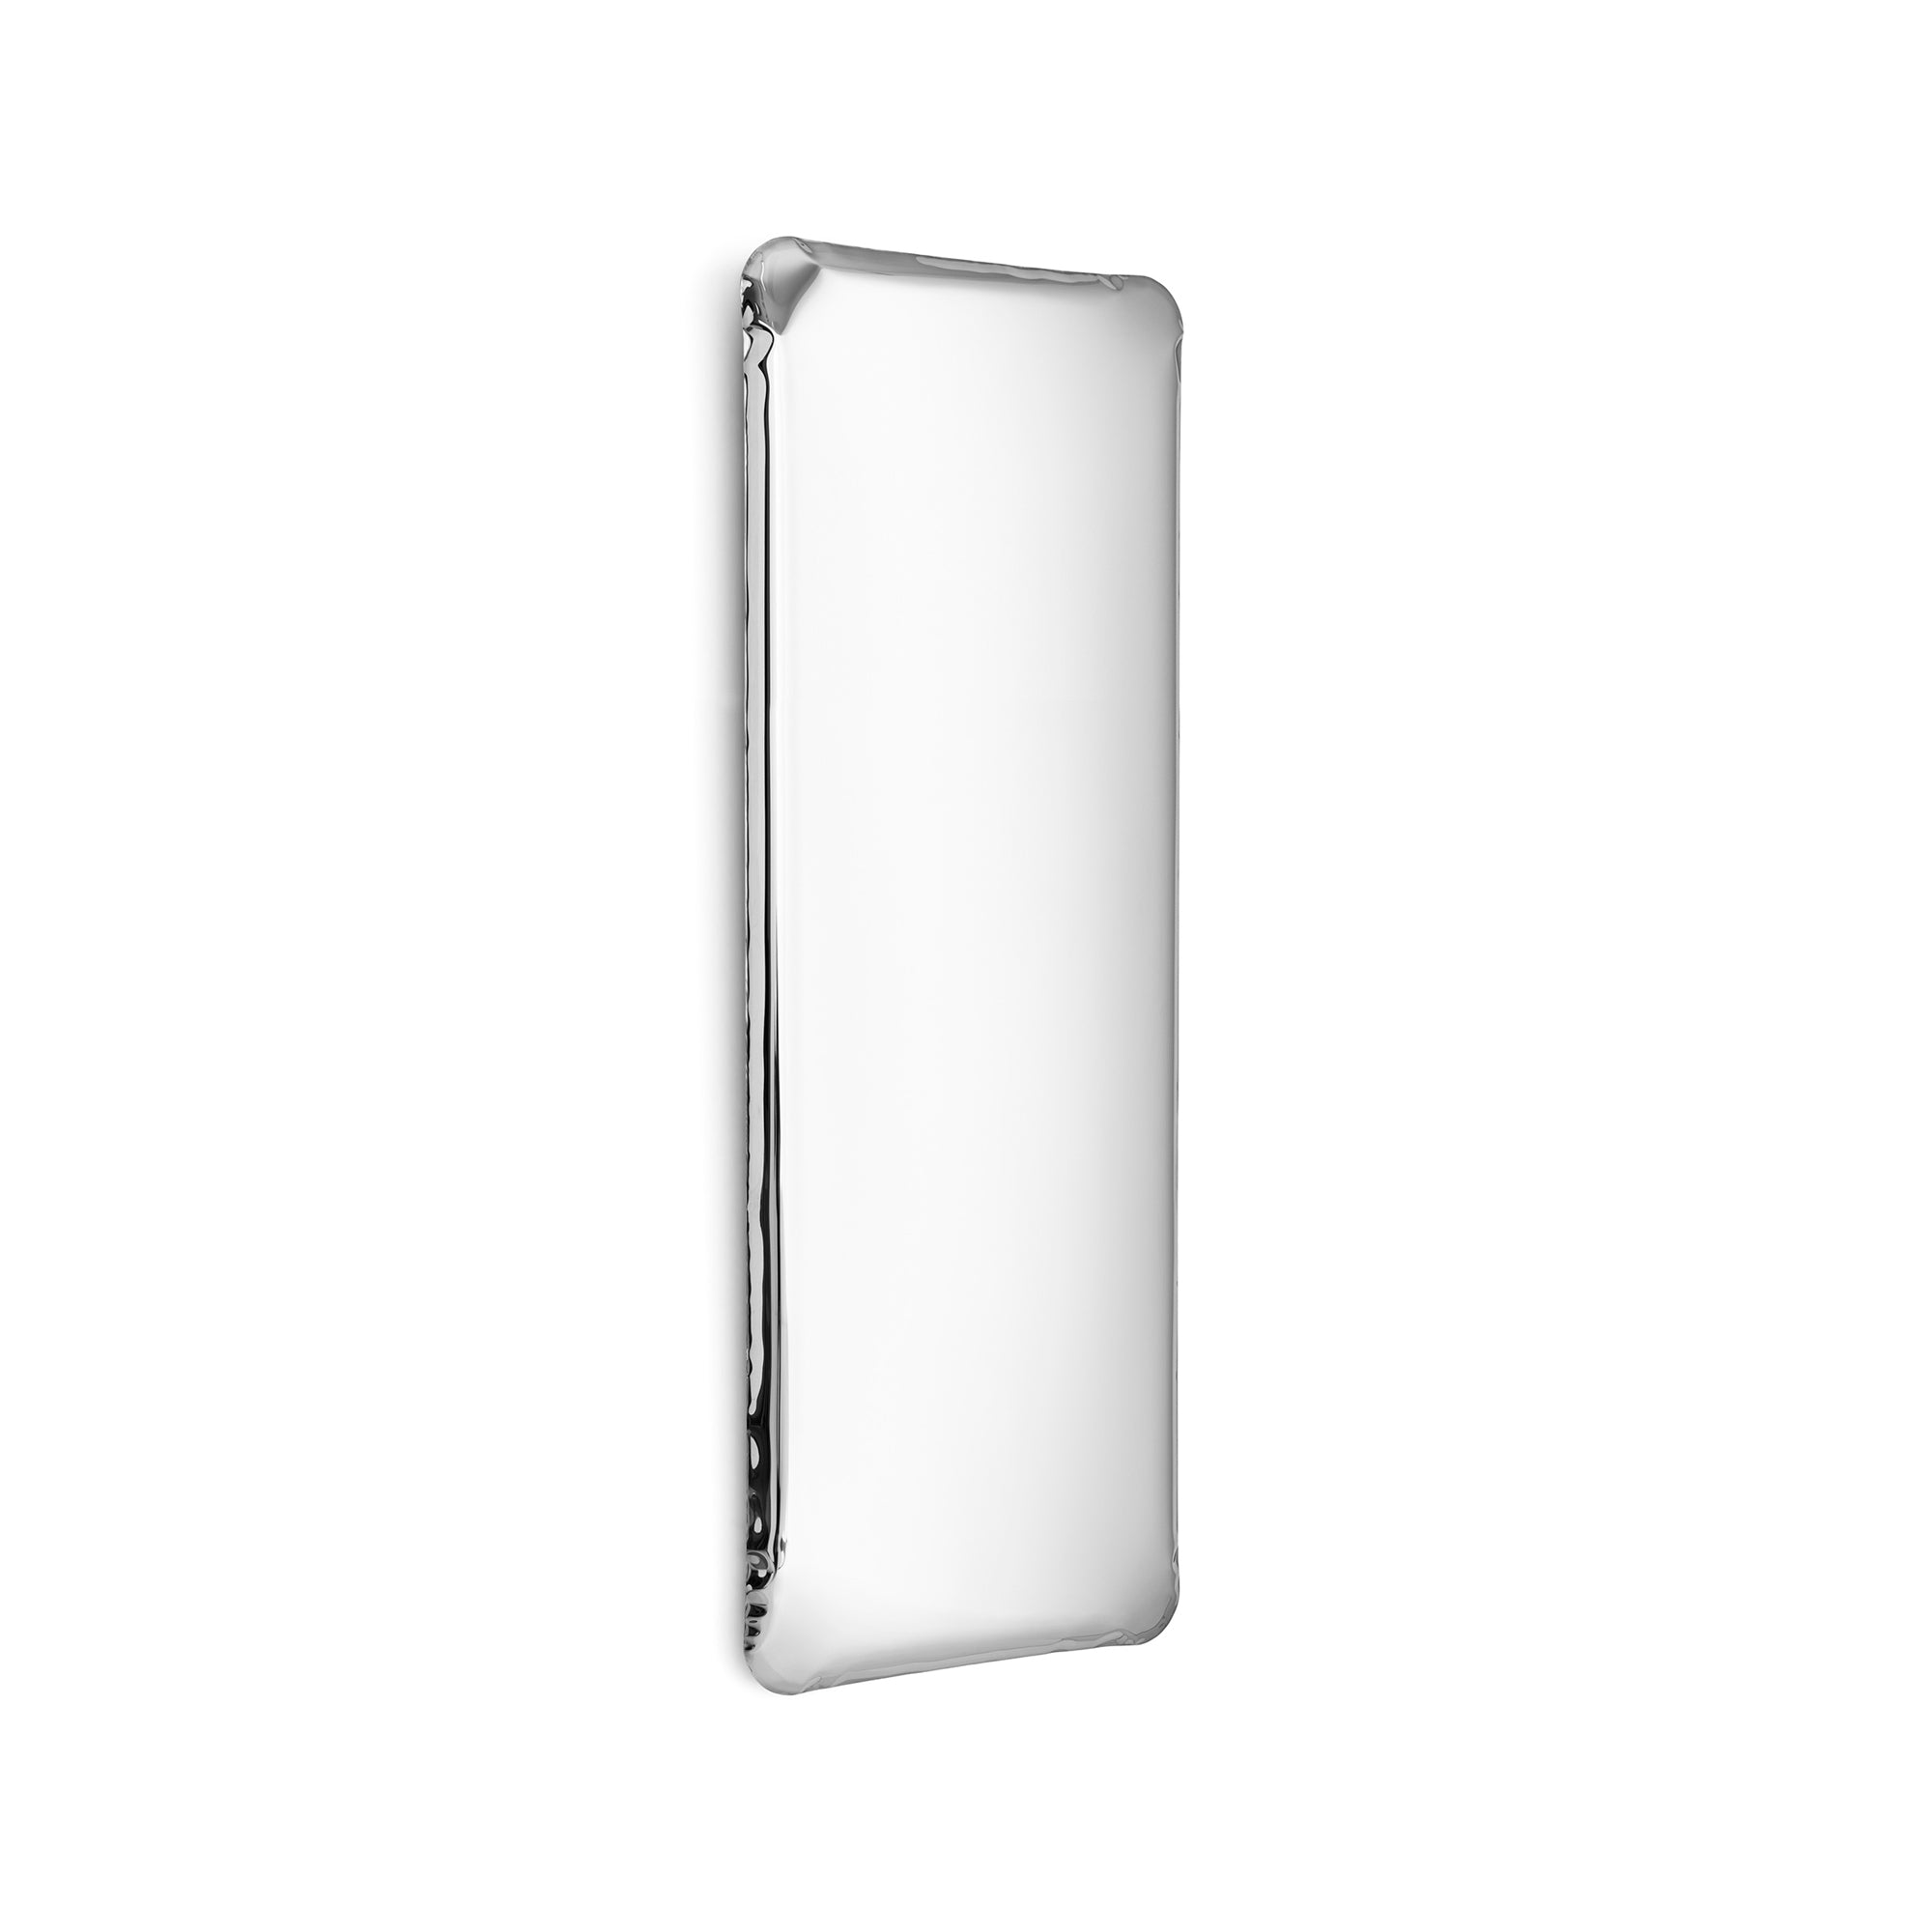 Tafla Q Full-Length Mirror